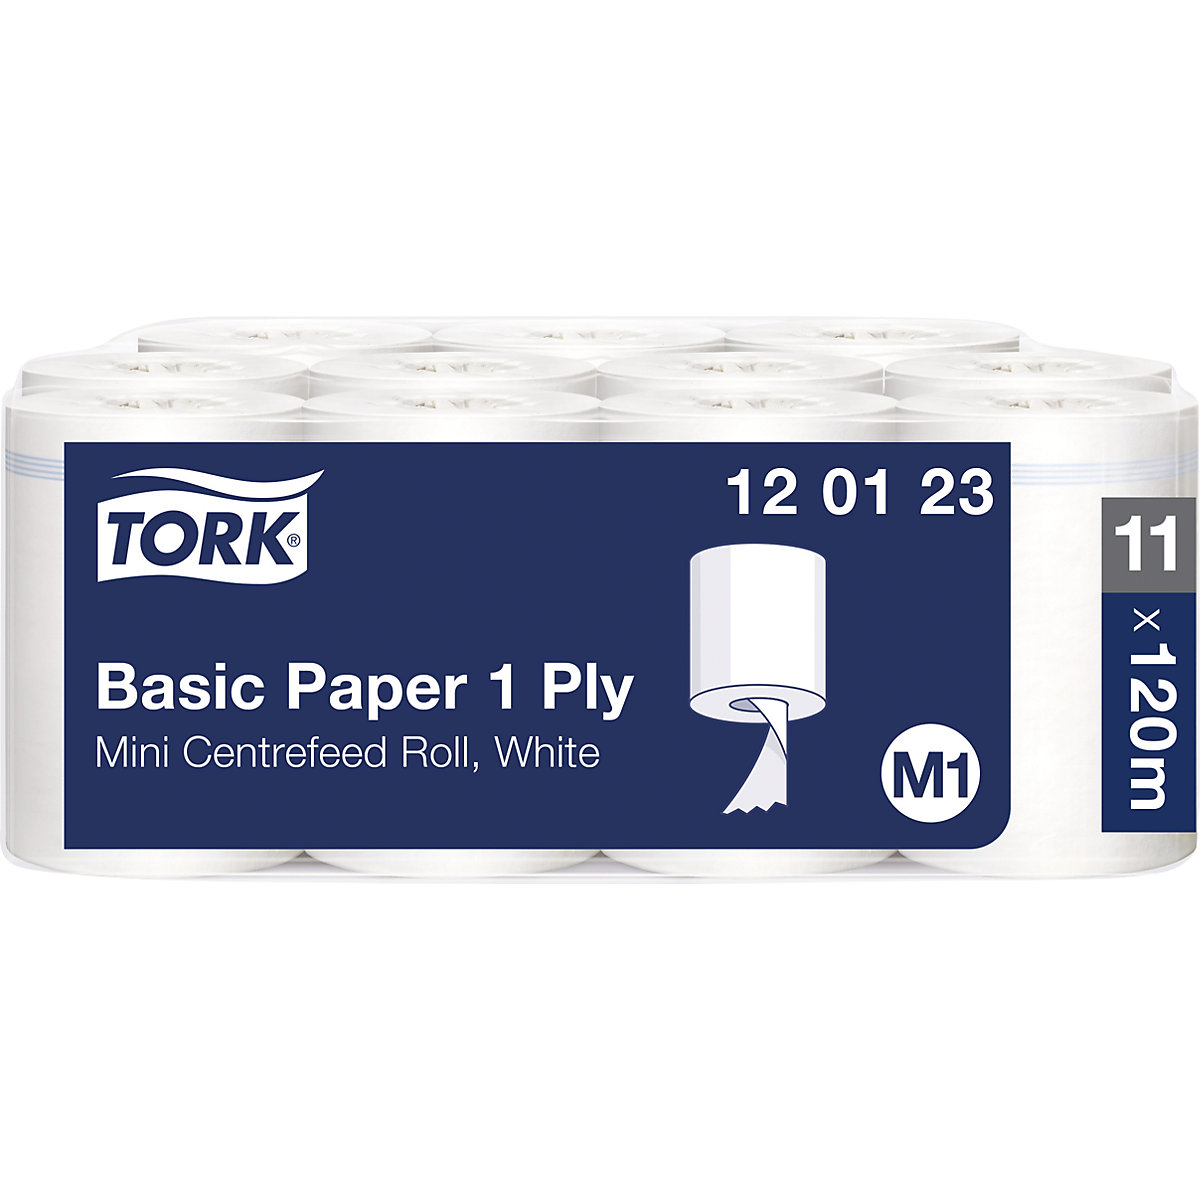 Standardowe ściereczki papierowe, centralne dozowanie – TORK (Zdjęcie produktu 4)-3